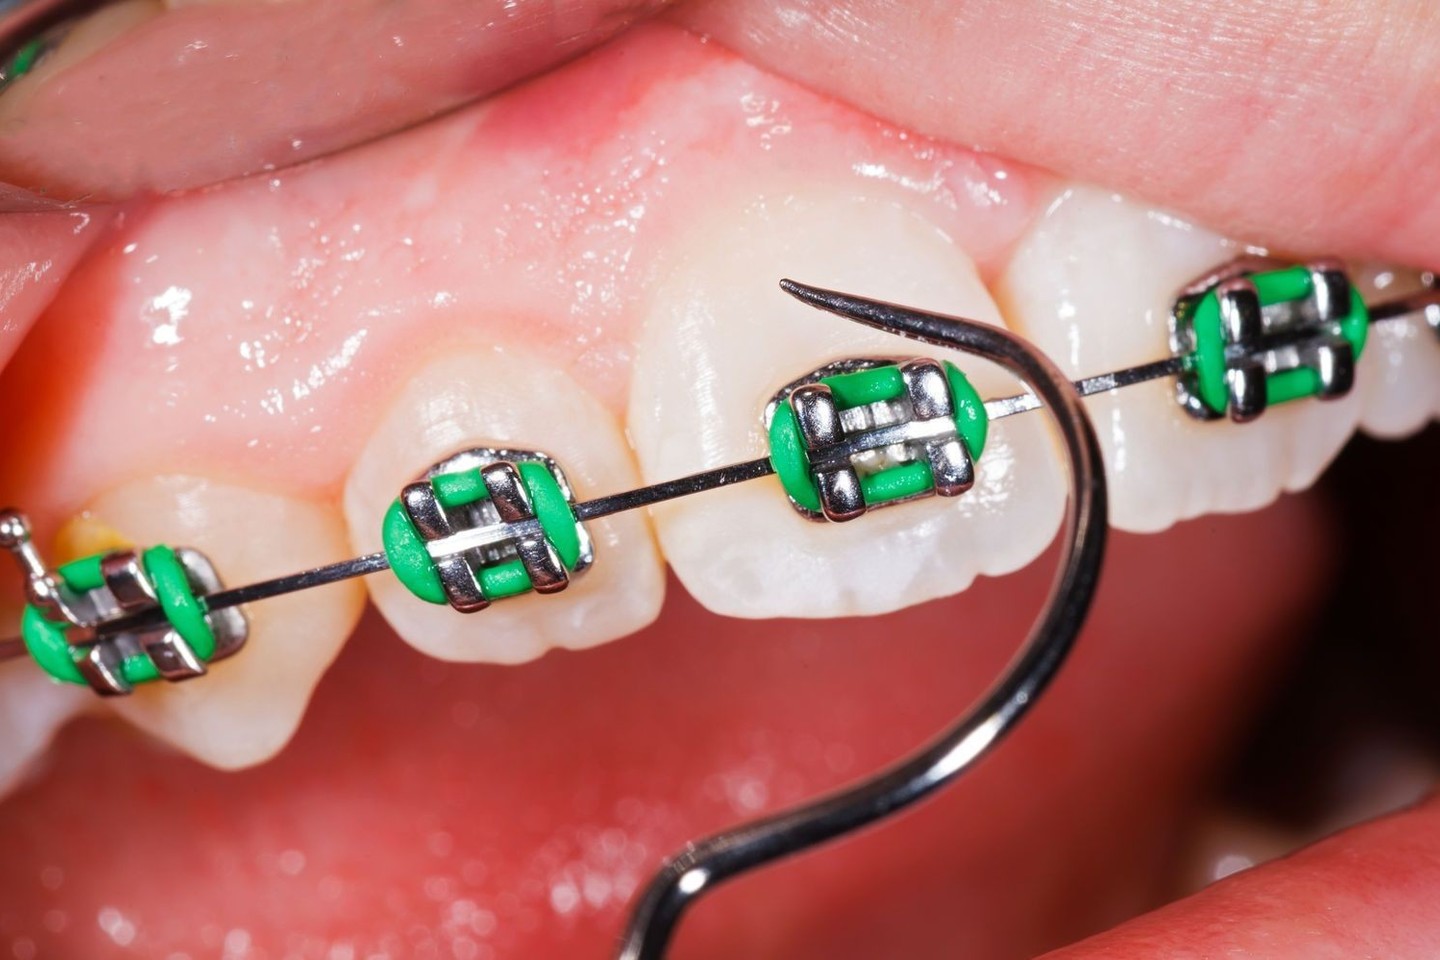 Didžioji dalis pacientų dantis dažniausiai tiesinasi ne dėl sveikatos problemų, o dėl estetikos ir grožio.<br>123rf nuotr.